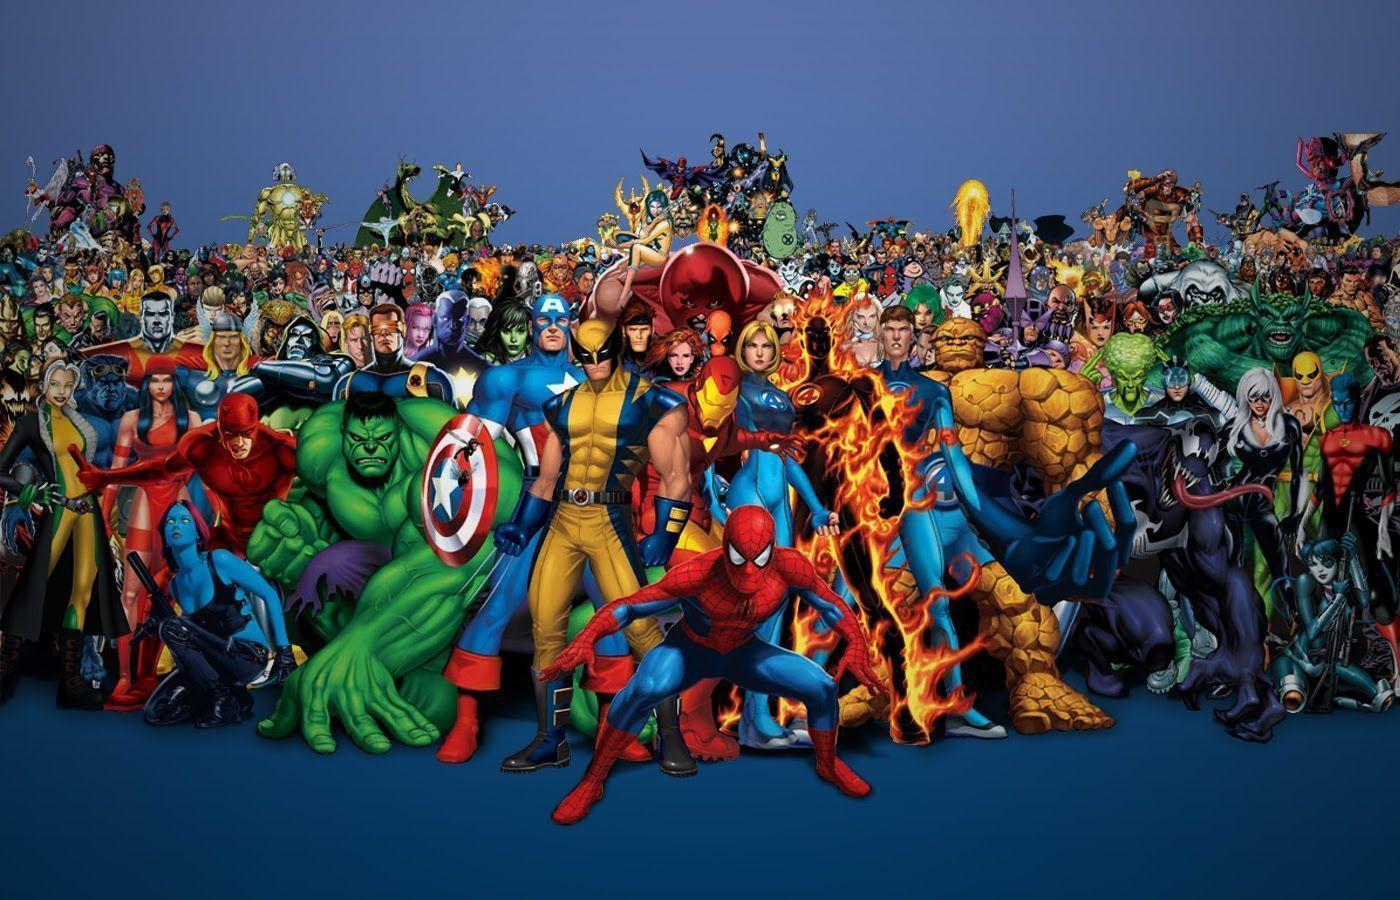 Wallpaper For > Marvel Heroes Wallpaper